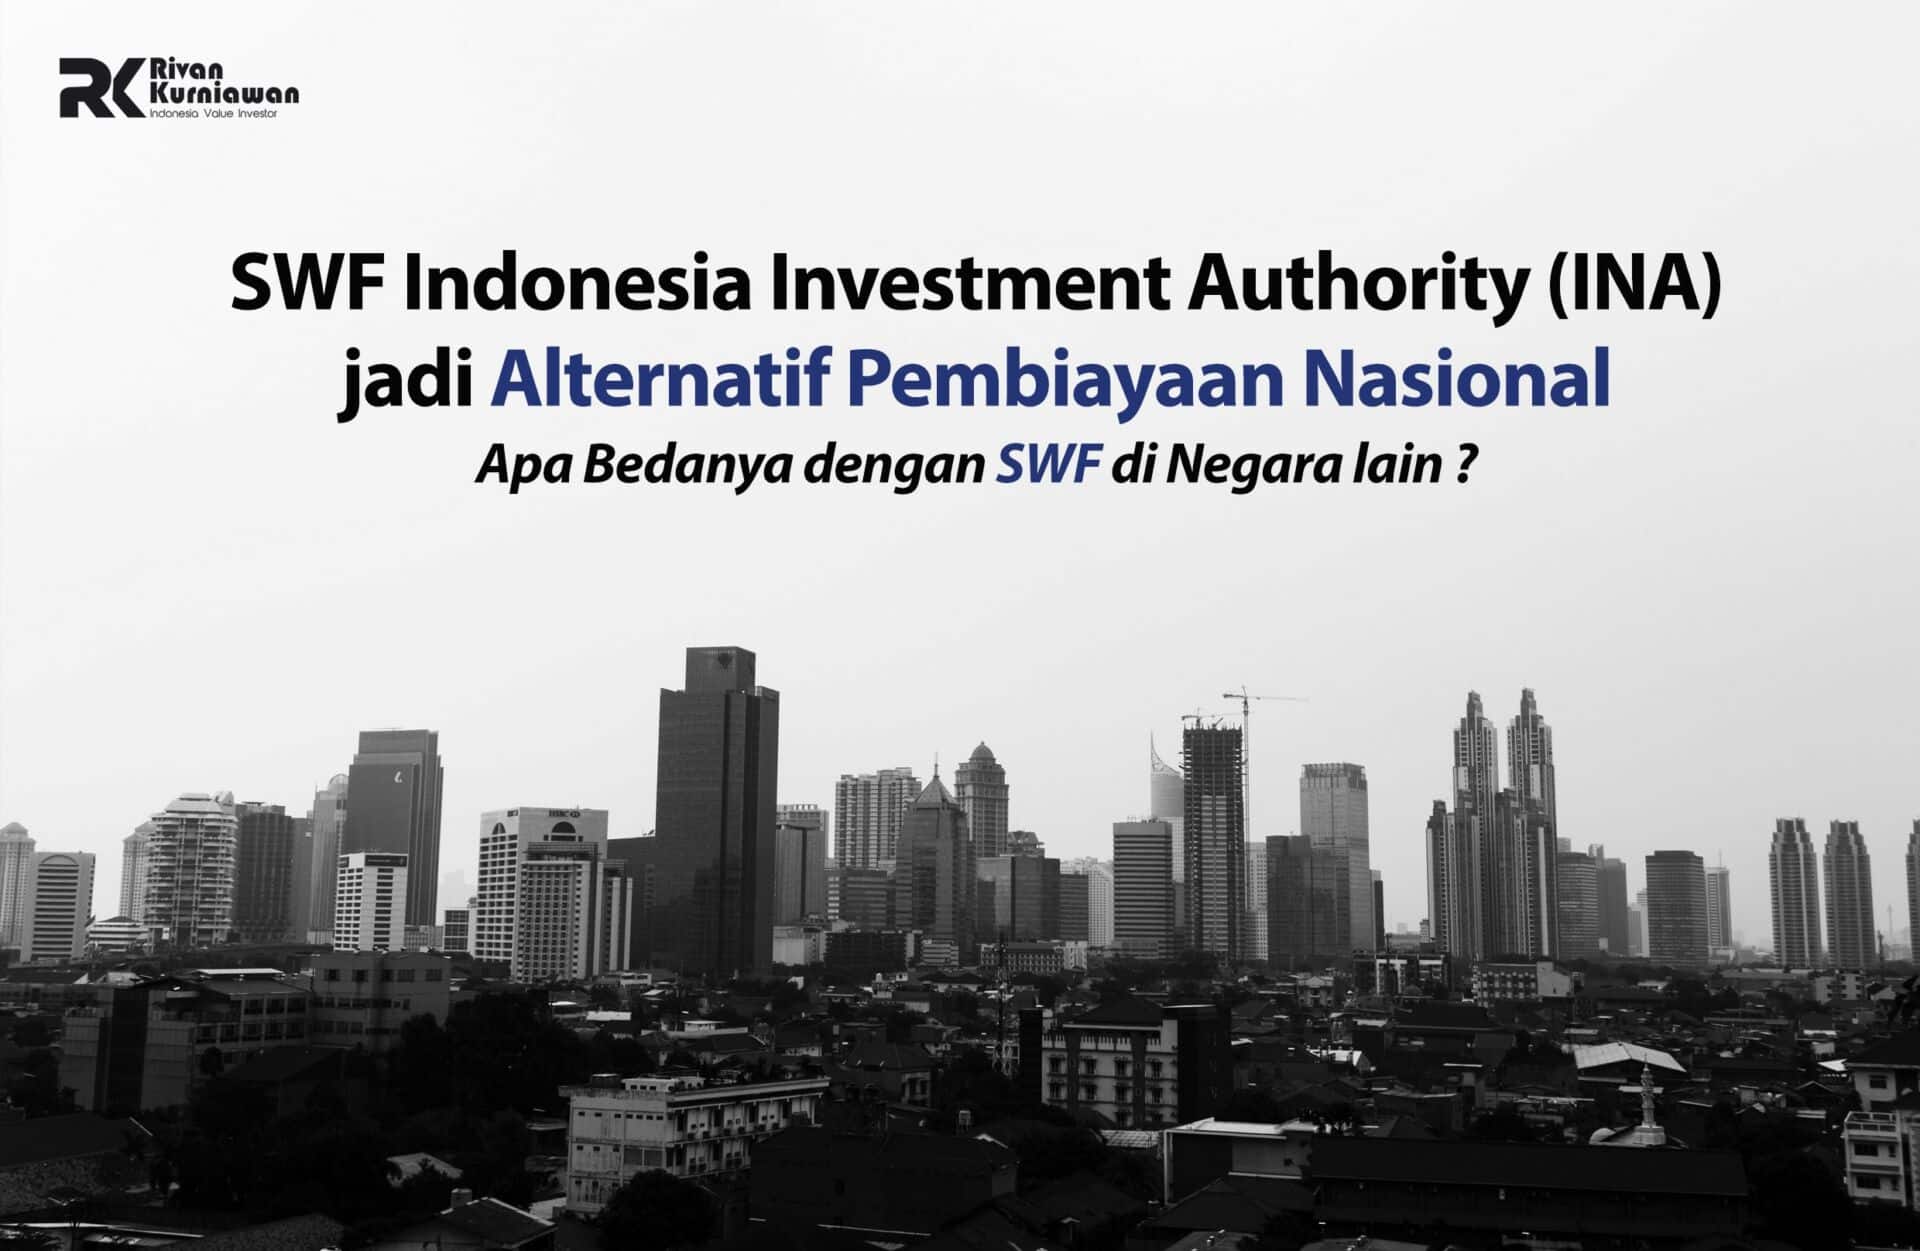 SWF Indonesia Investment Authority (INA) jadi Alternatif Pembiayaan Nasional, Apa Bedanya dengan SWF di Negara Lain ?